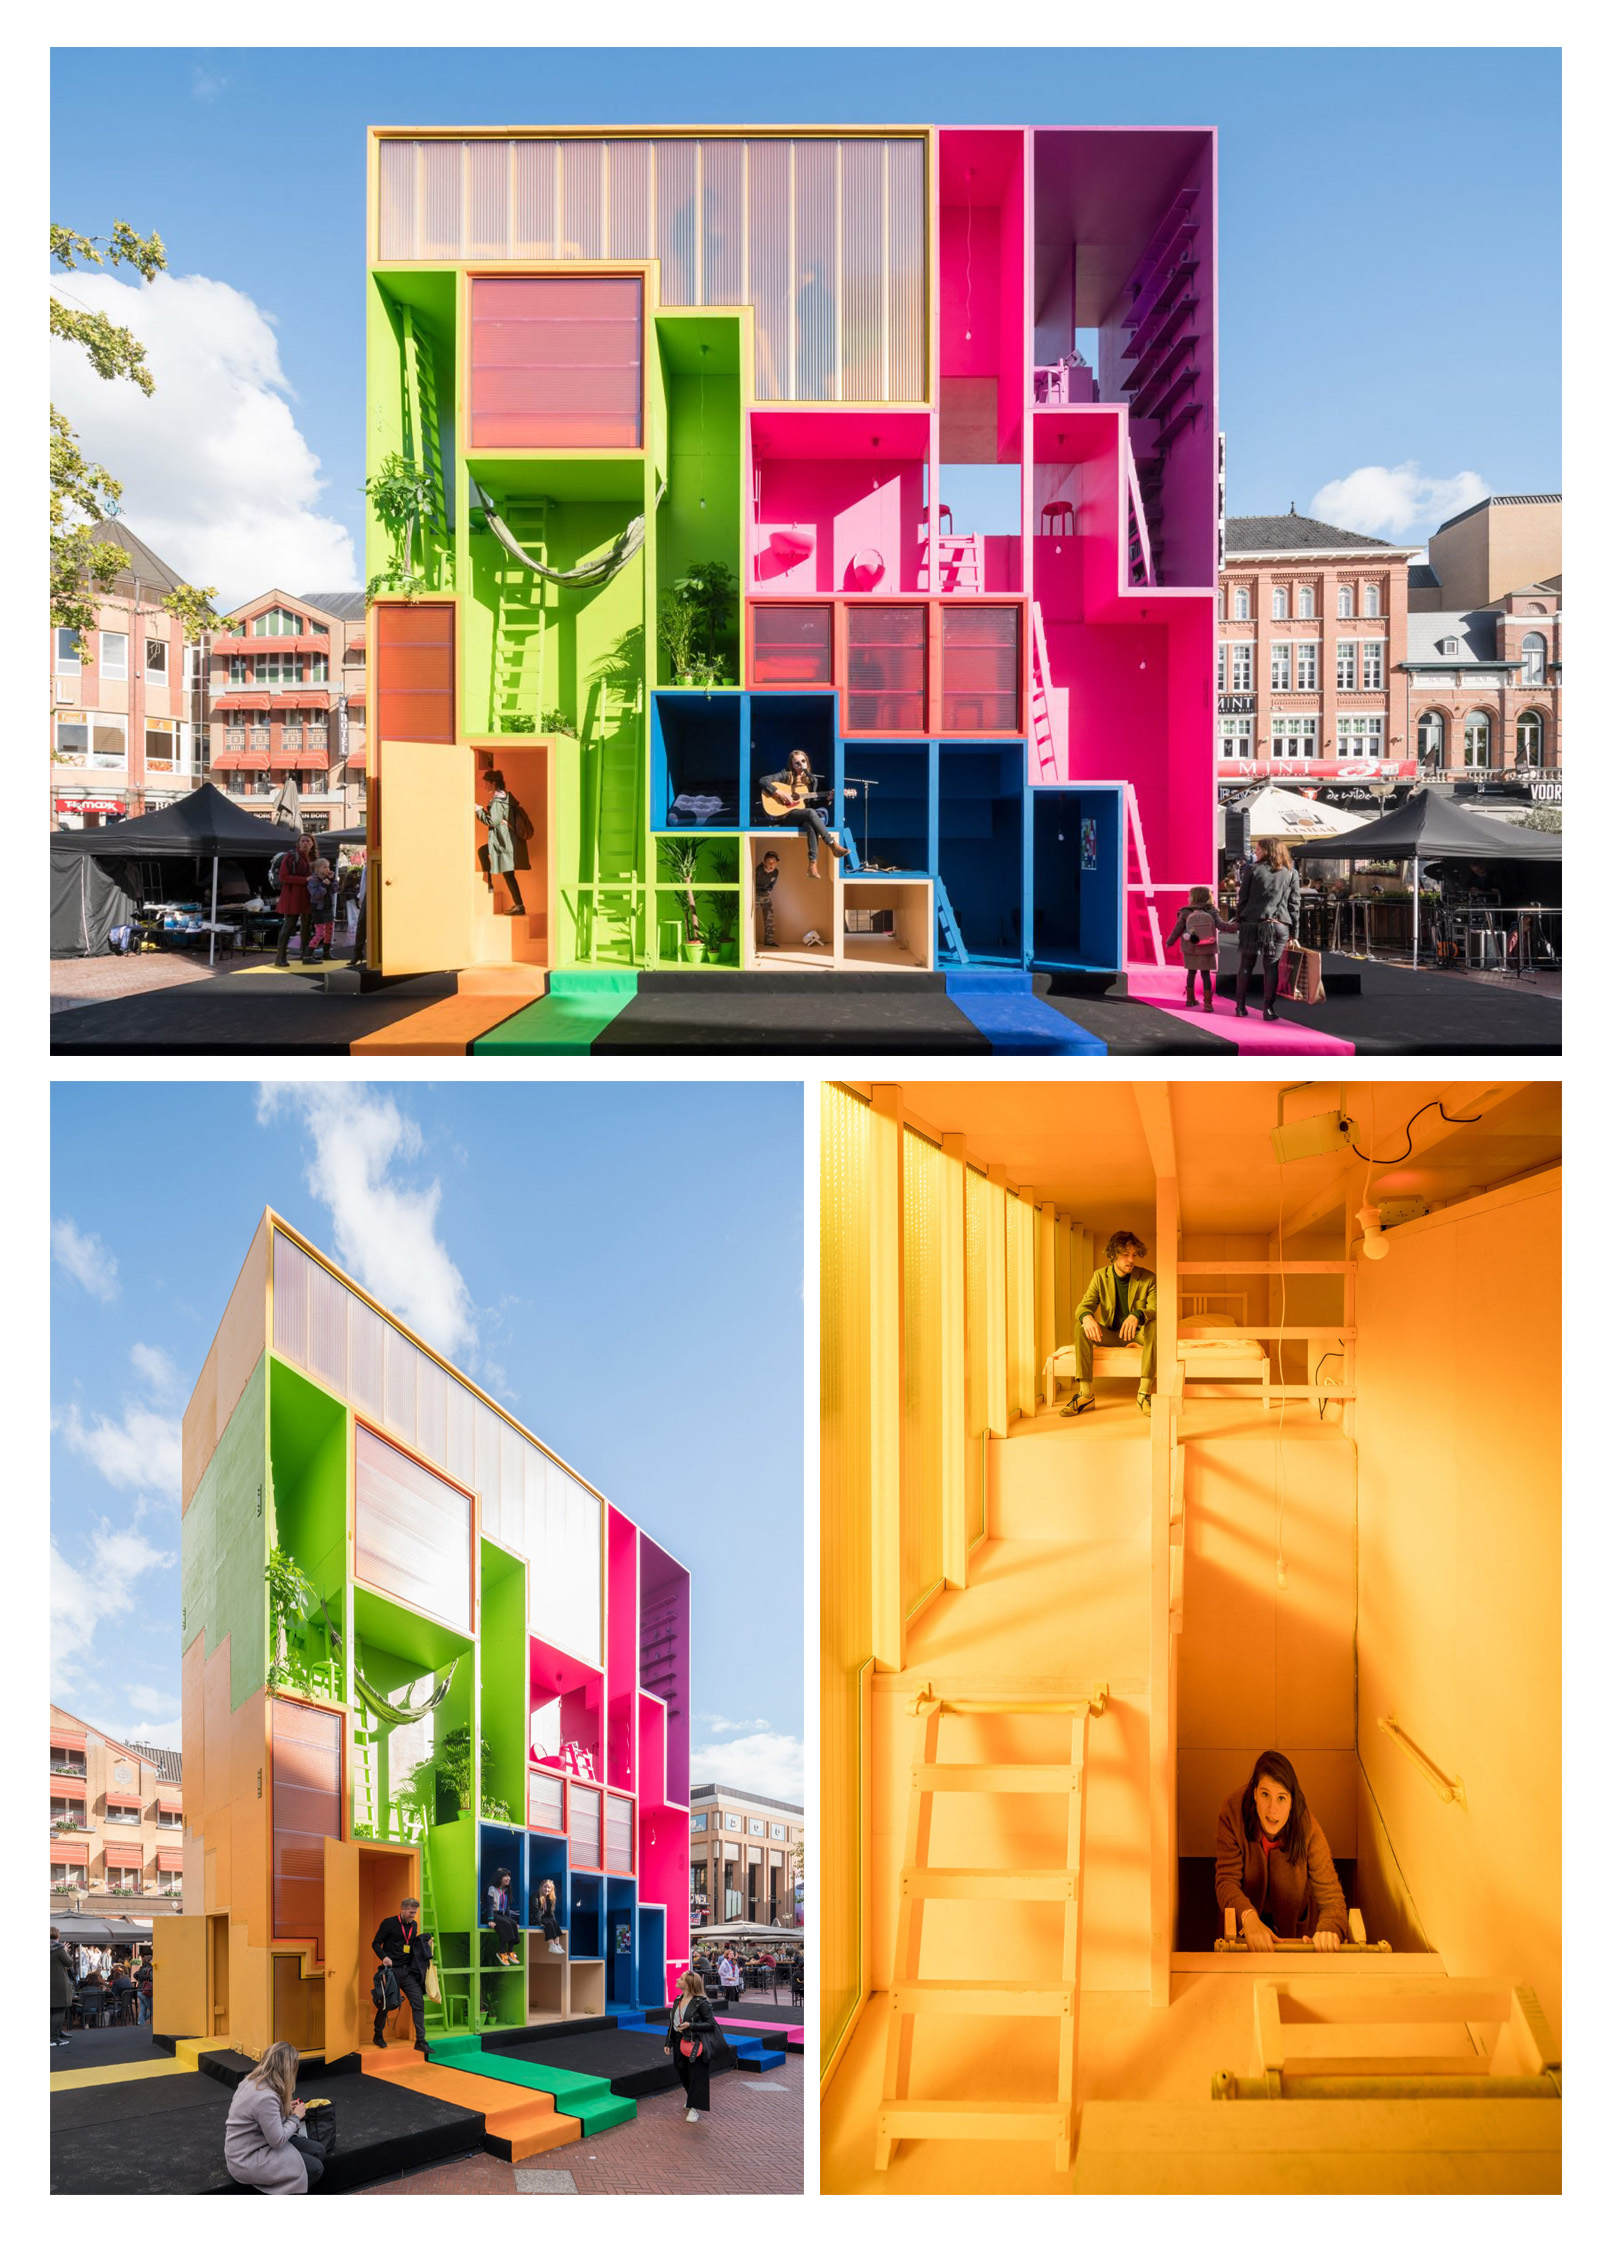 ارائه مفهوم نوینی از هتل در هفته طراحی هلند